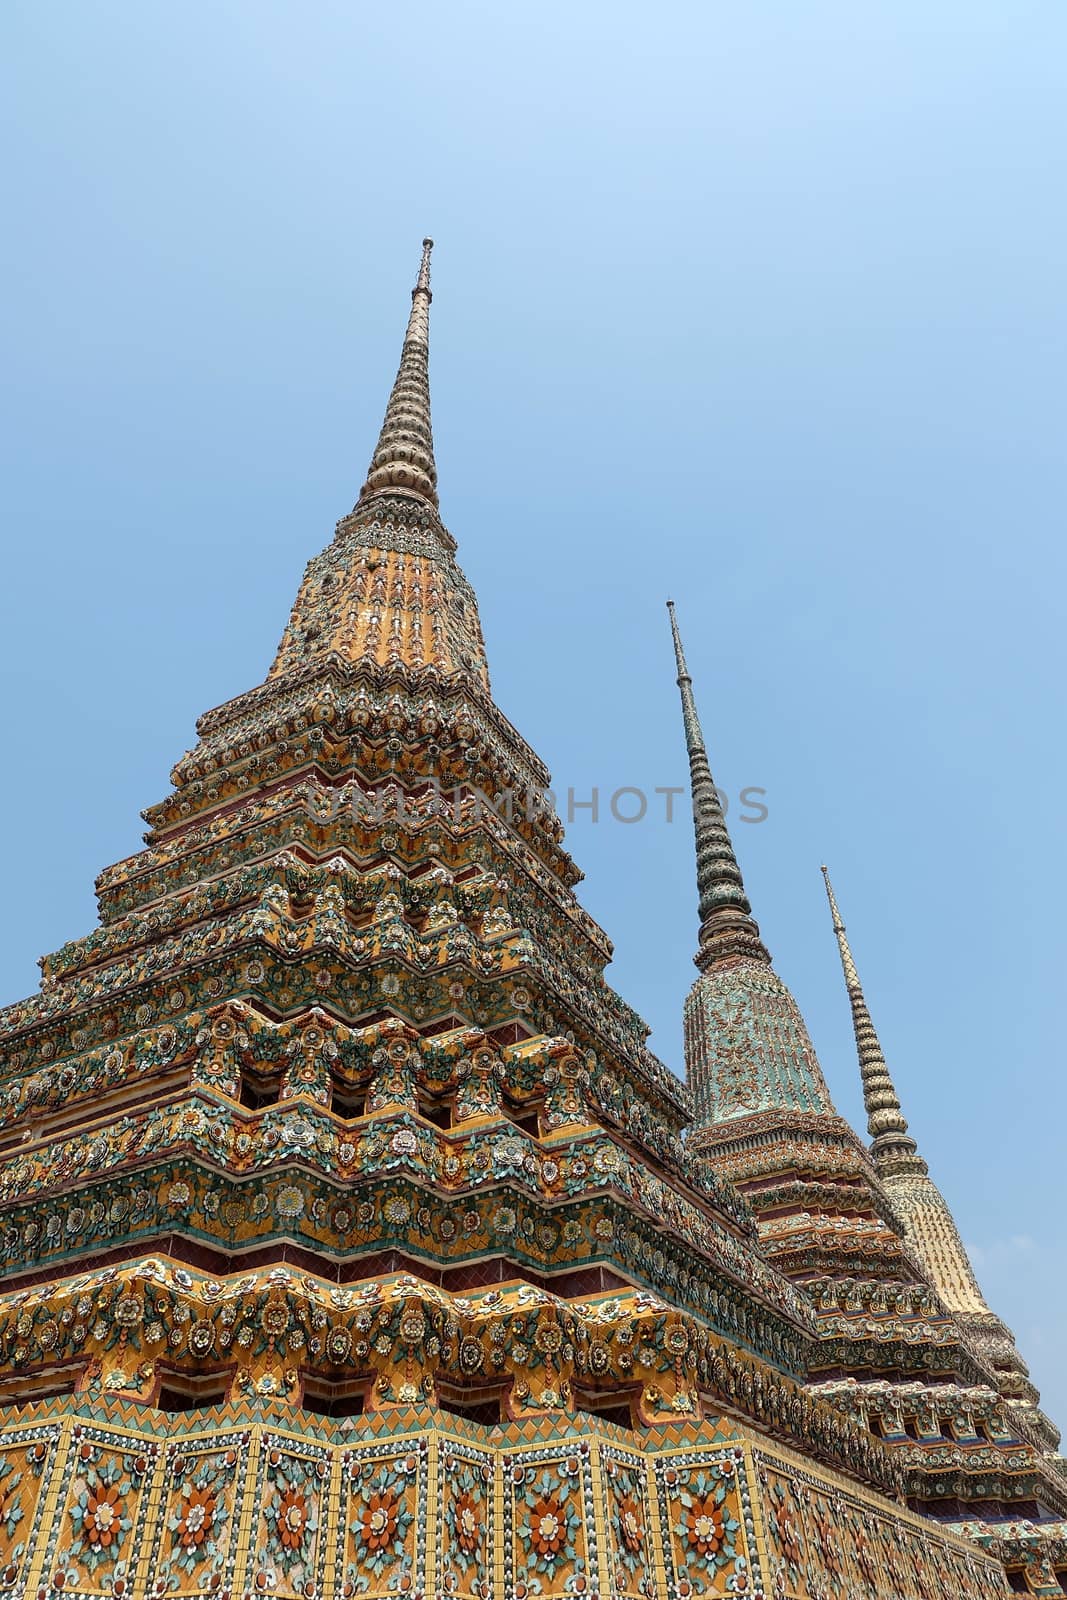 Ancient Stupa at Wat Pho Bangkok, Thailand.